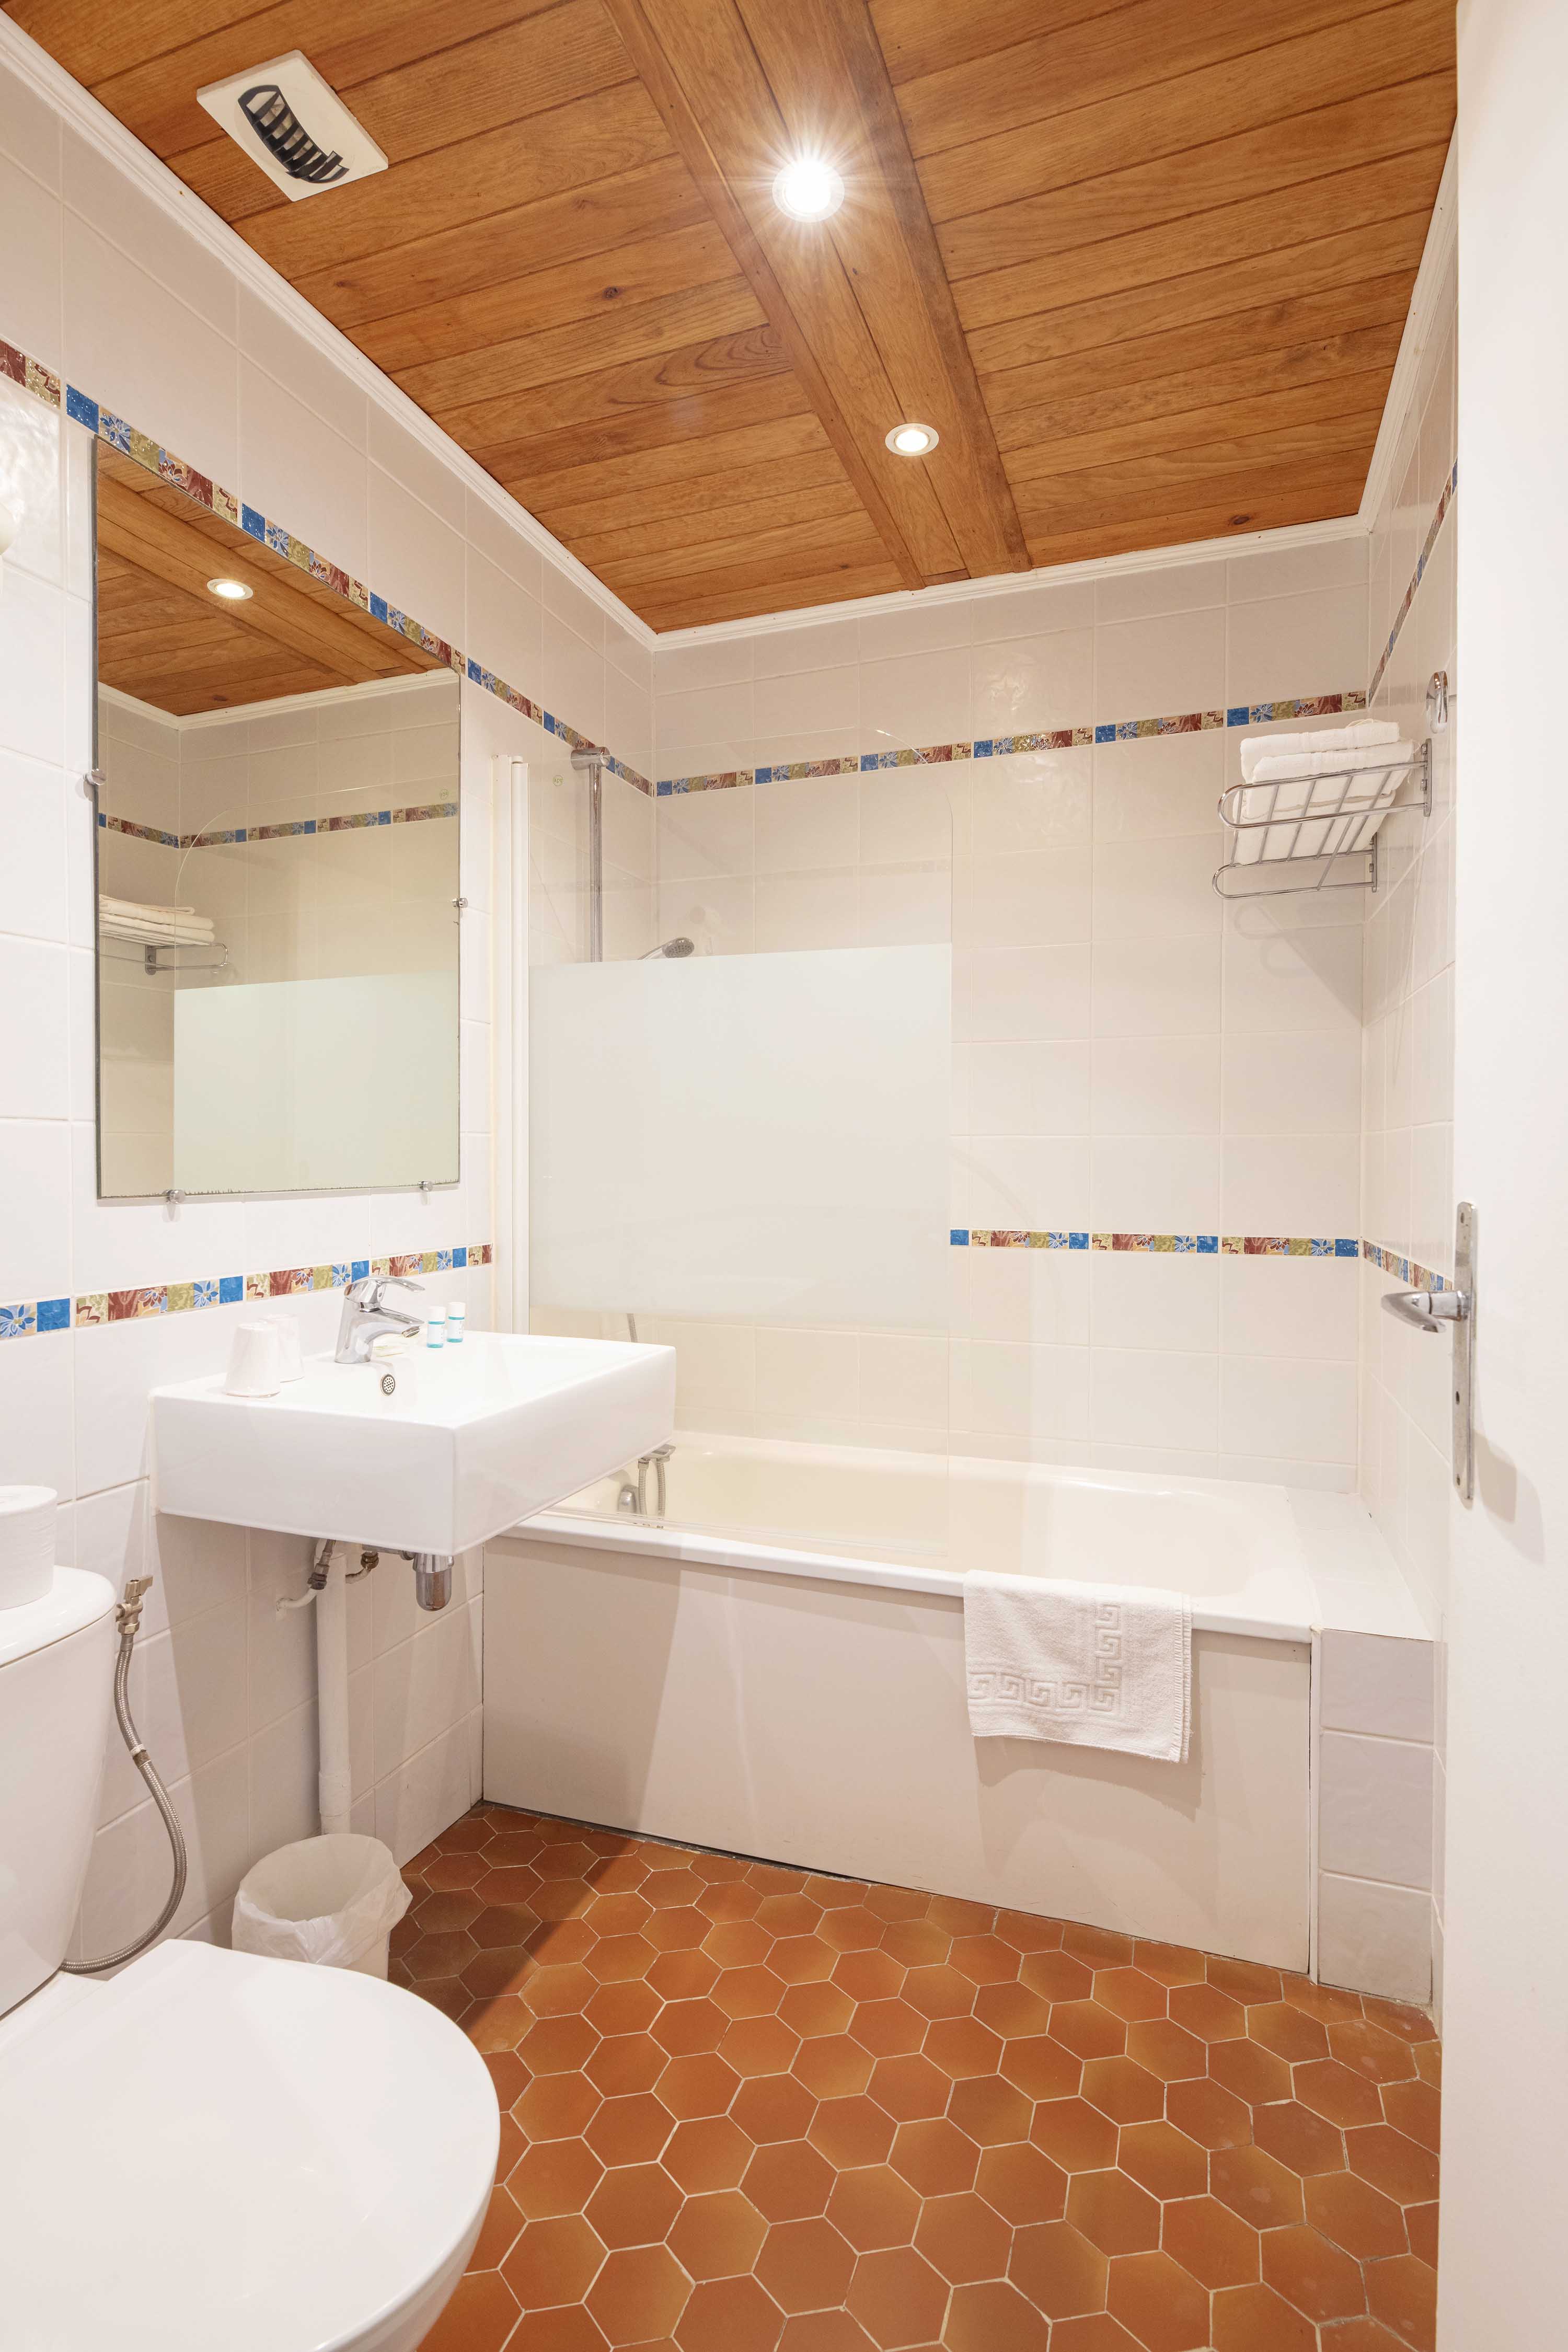 View inside a bathroom | Source : Hotel Le Relais des Cîmes - www.relaisdescimes.com